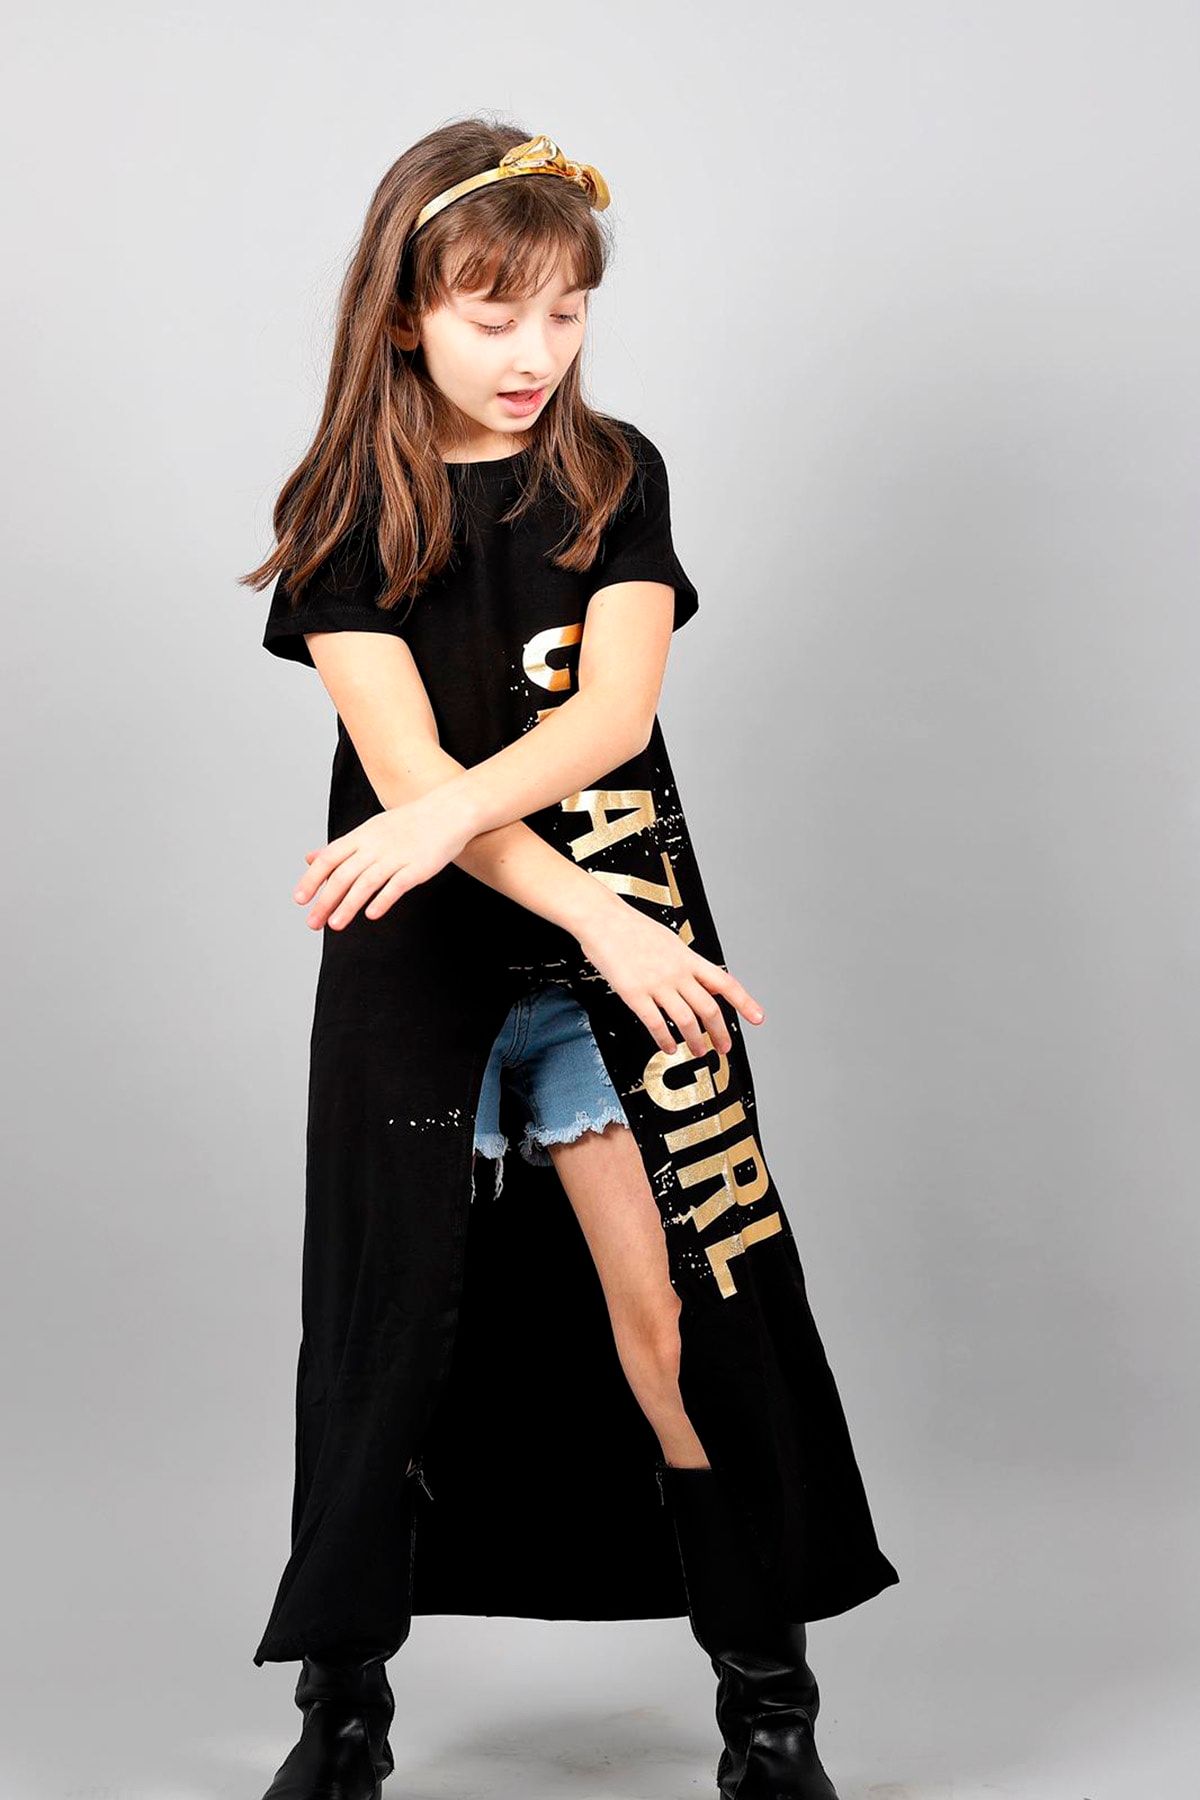 Hilal Akıncı Style Siyah Renk Tunik Ve Kot Şorttan Oluşan Gold Renk Fontlu Kız Çocuk Ikili Takım